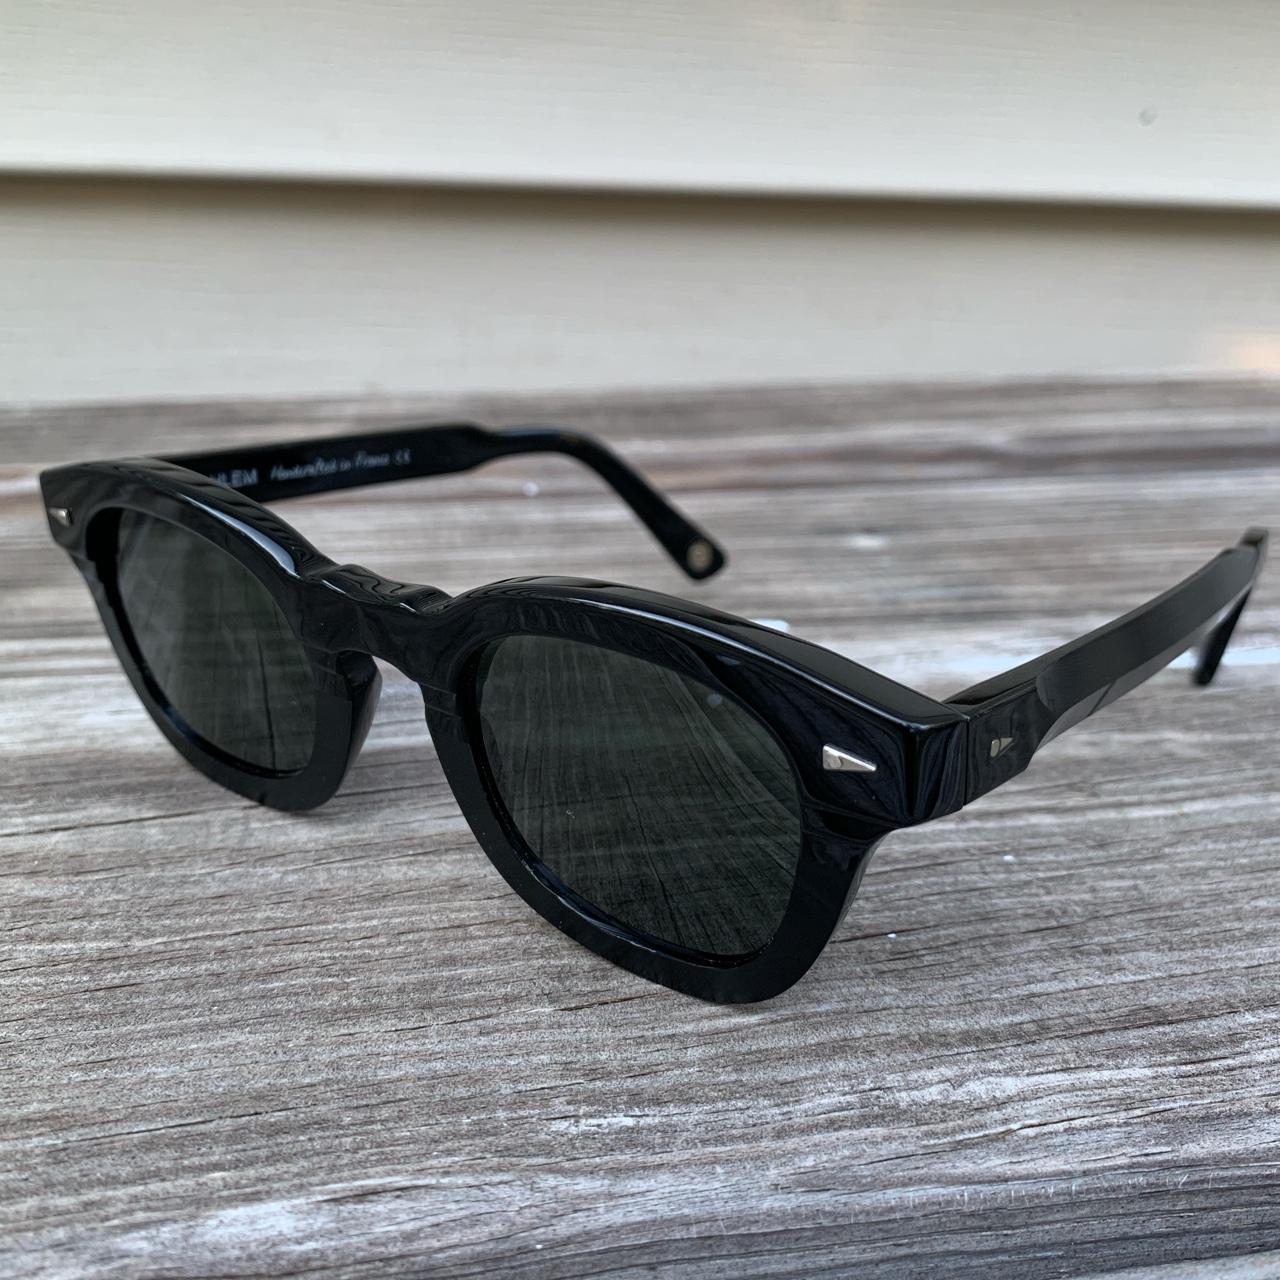 Product Image 2 - Authentic Black AHLEM Sunglasses

Le Marais